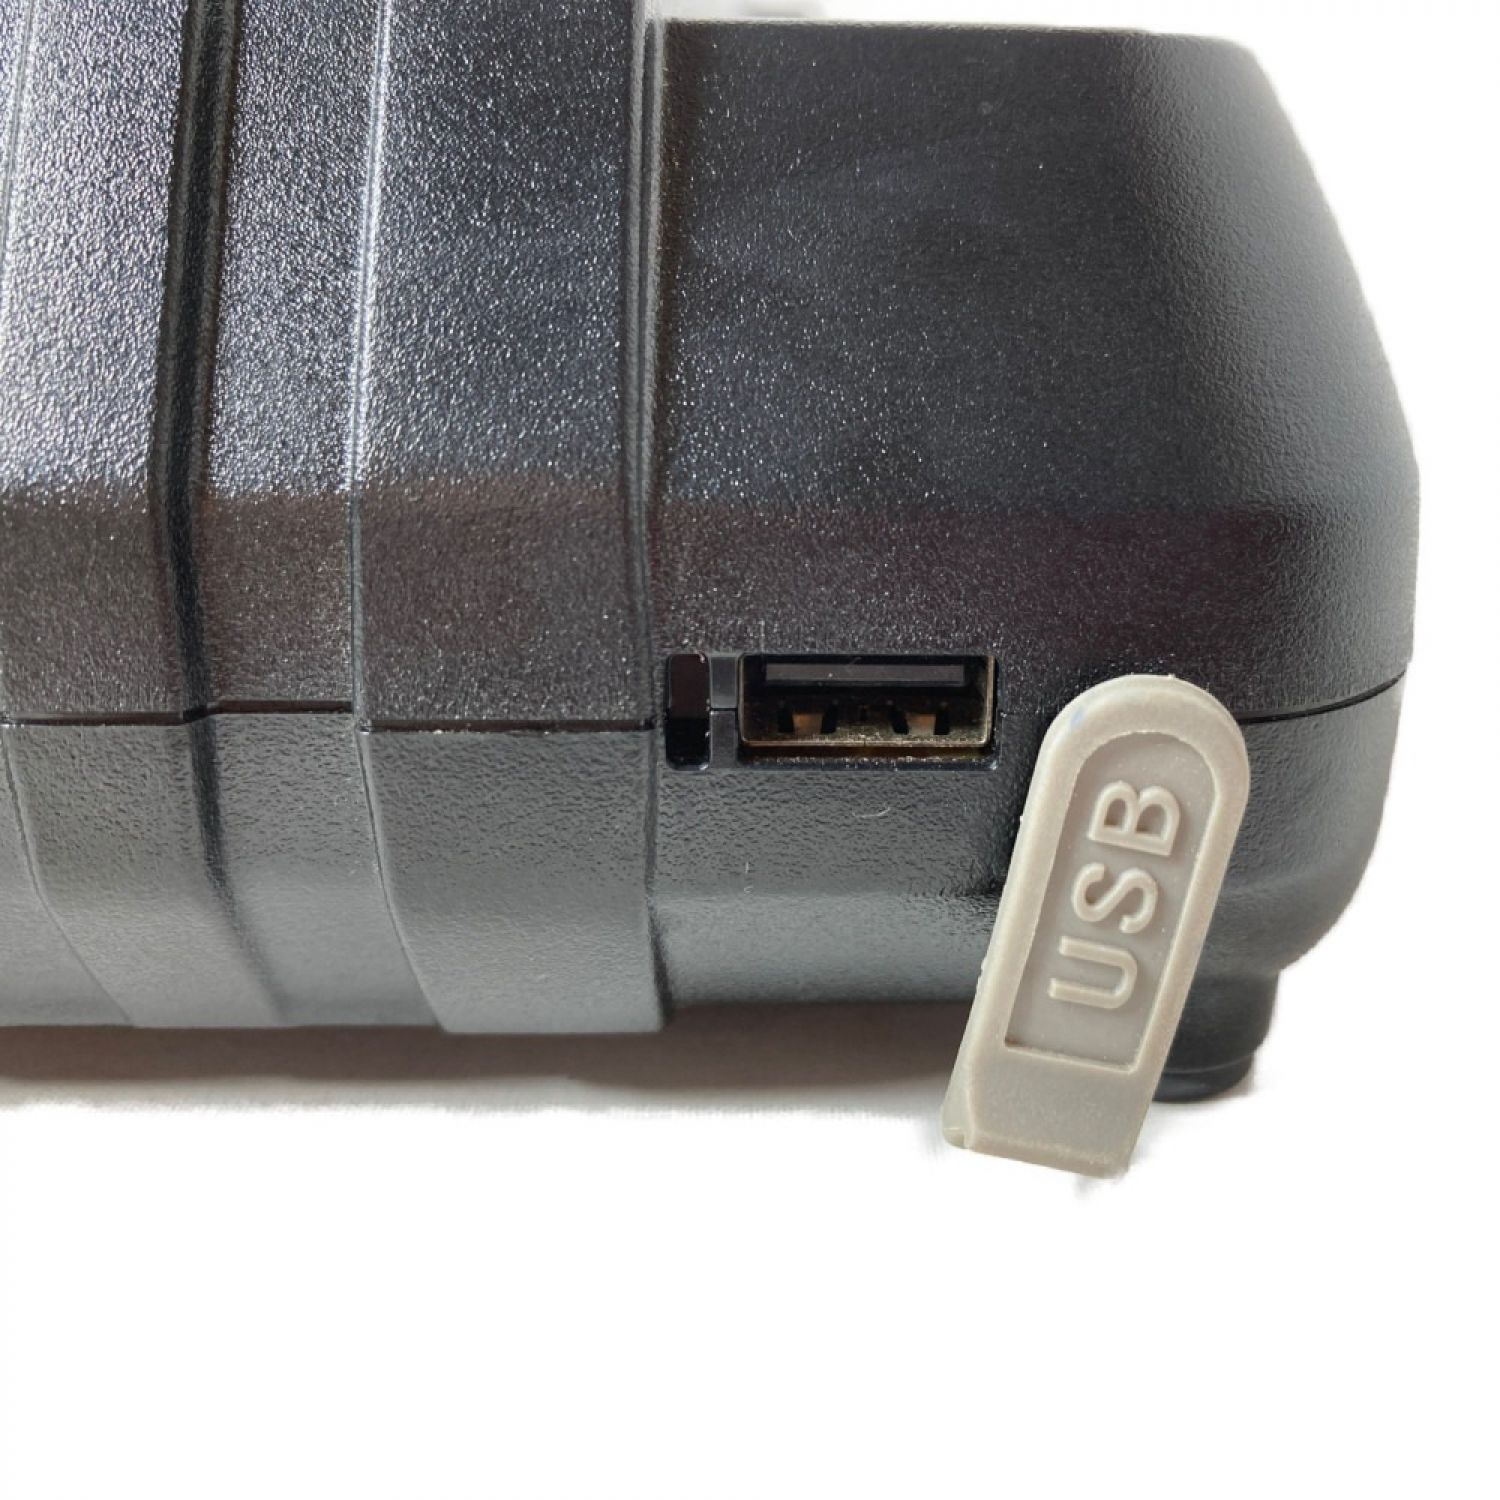 中古】 MAKITA マキタ 2口急速充電器 USB機器充電可能 7.2V~18V 本体